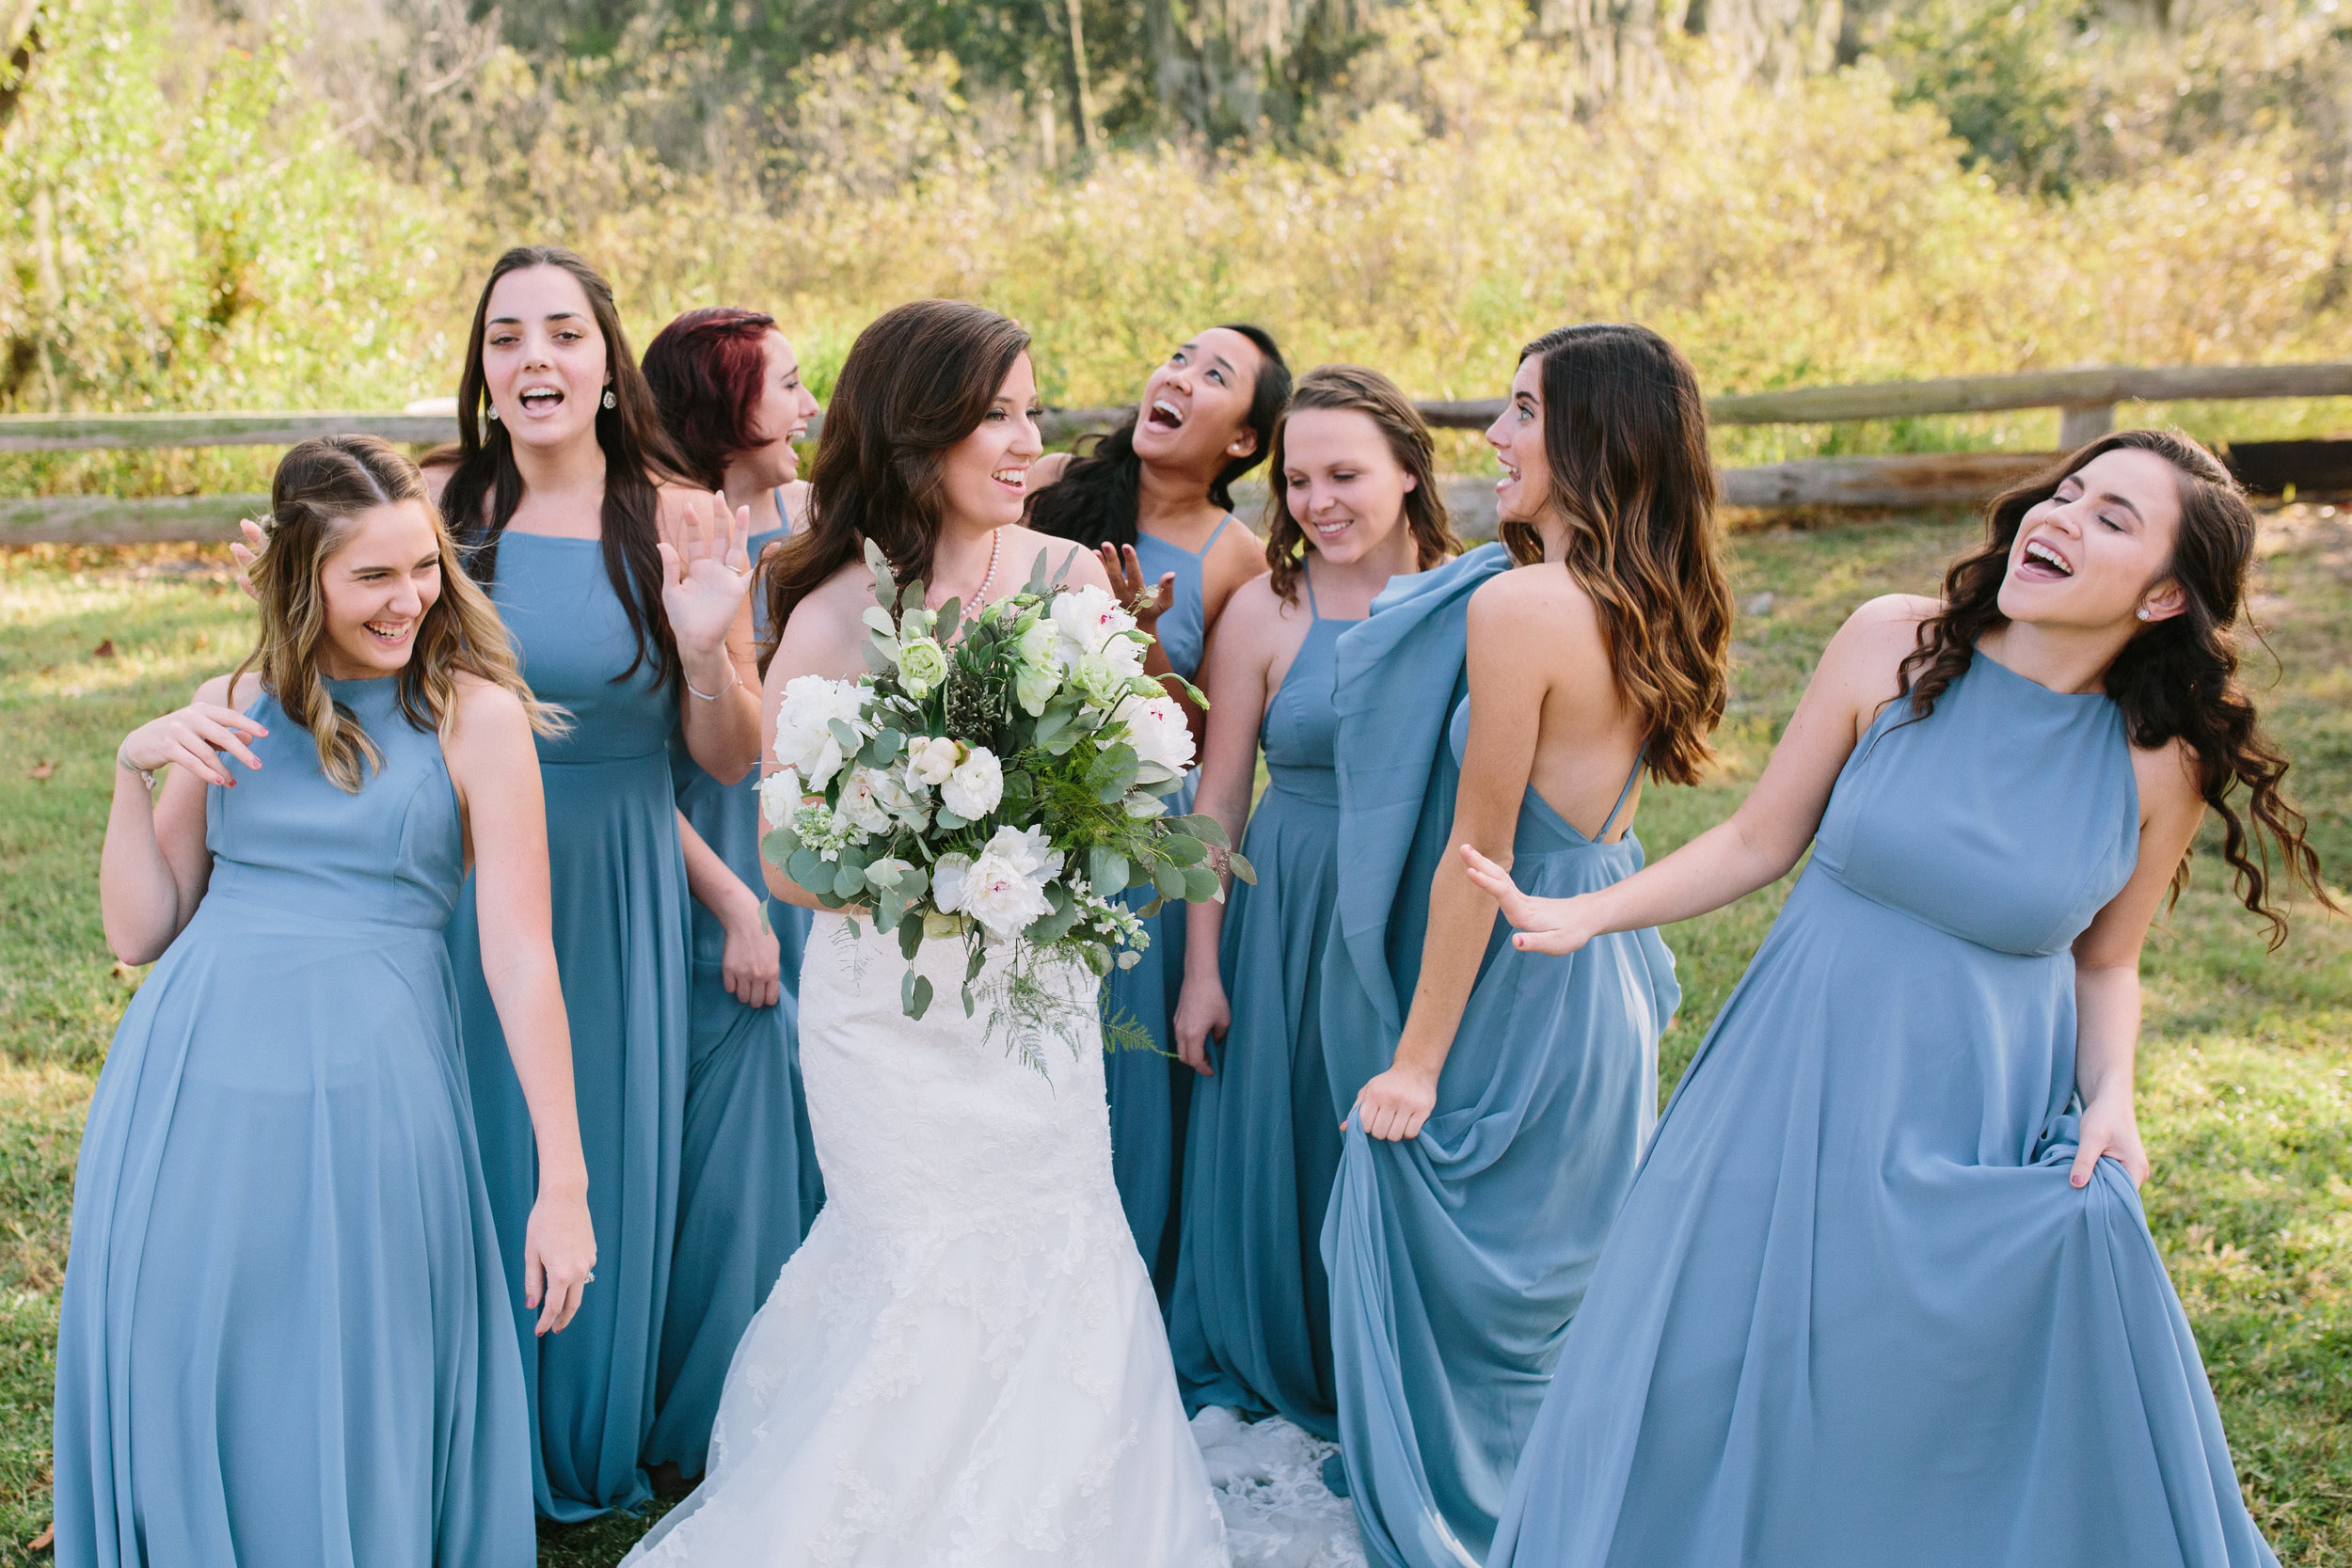 Bridesmaids | Florida Rustic Barn Weddings | Plant City, Florida Wedding Photography | Benjamin Hewitt Photographer